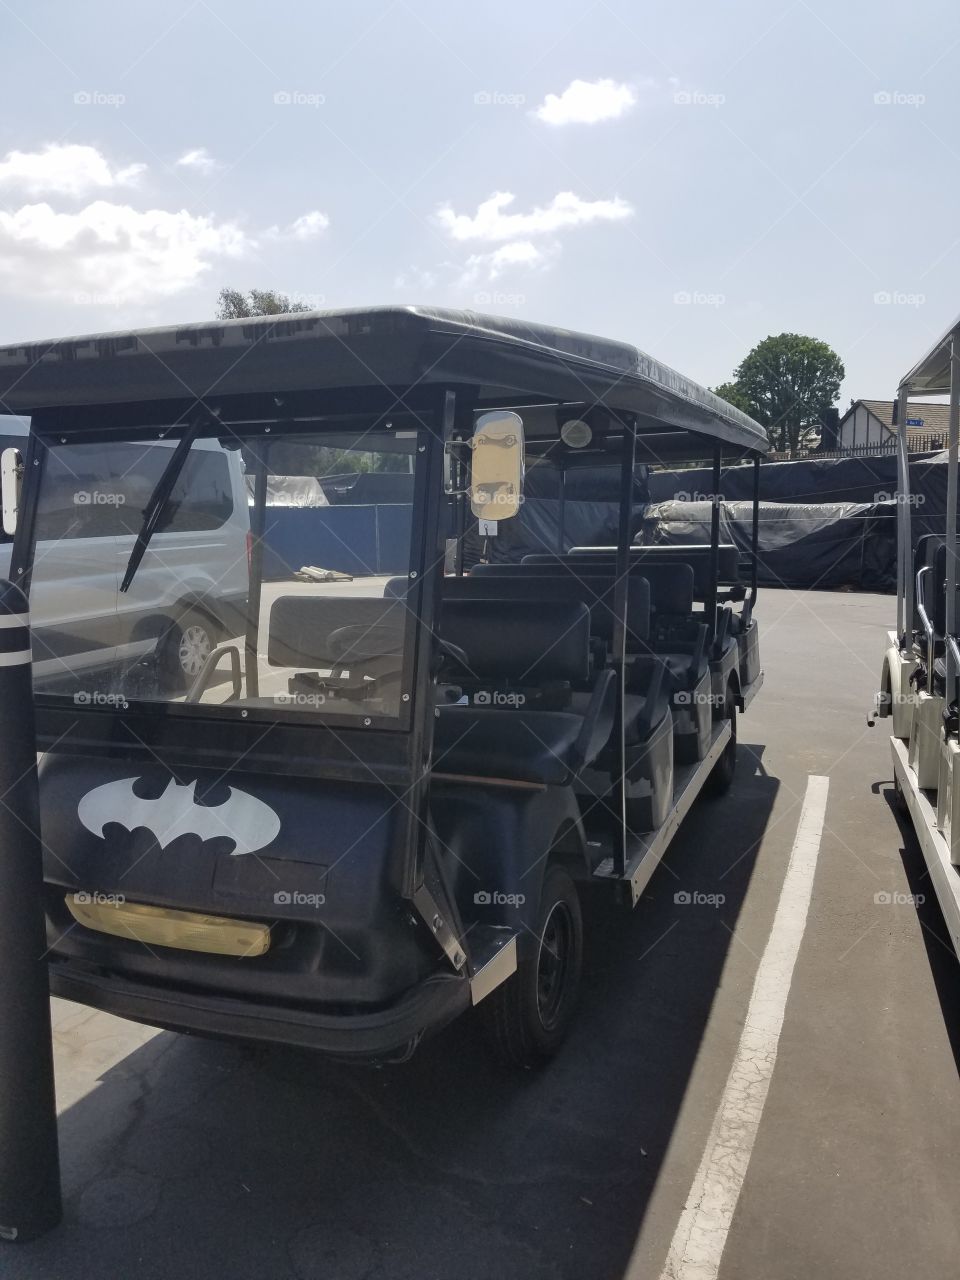 Batman  golf cart warner brothers studios